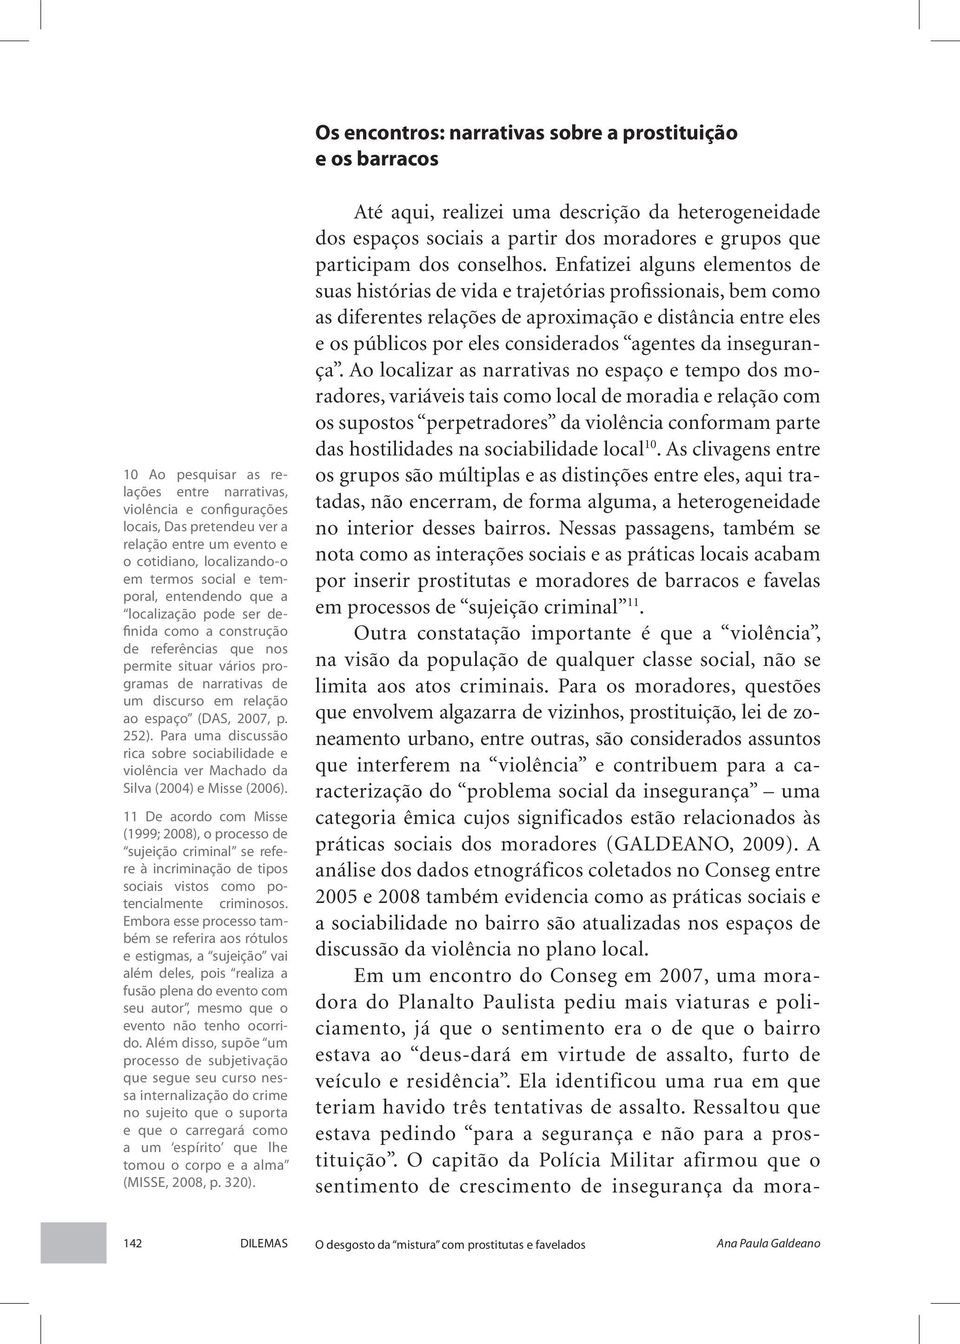 relação ao espaço (DAS, 2007, p. 252). Para uma discussão rica sobre sociabilidade e violência ver Machado da Silva (2004) e Misse (2006).